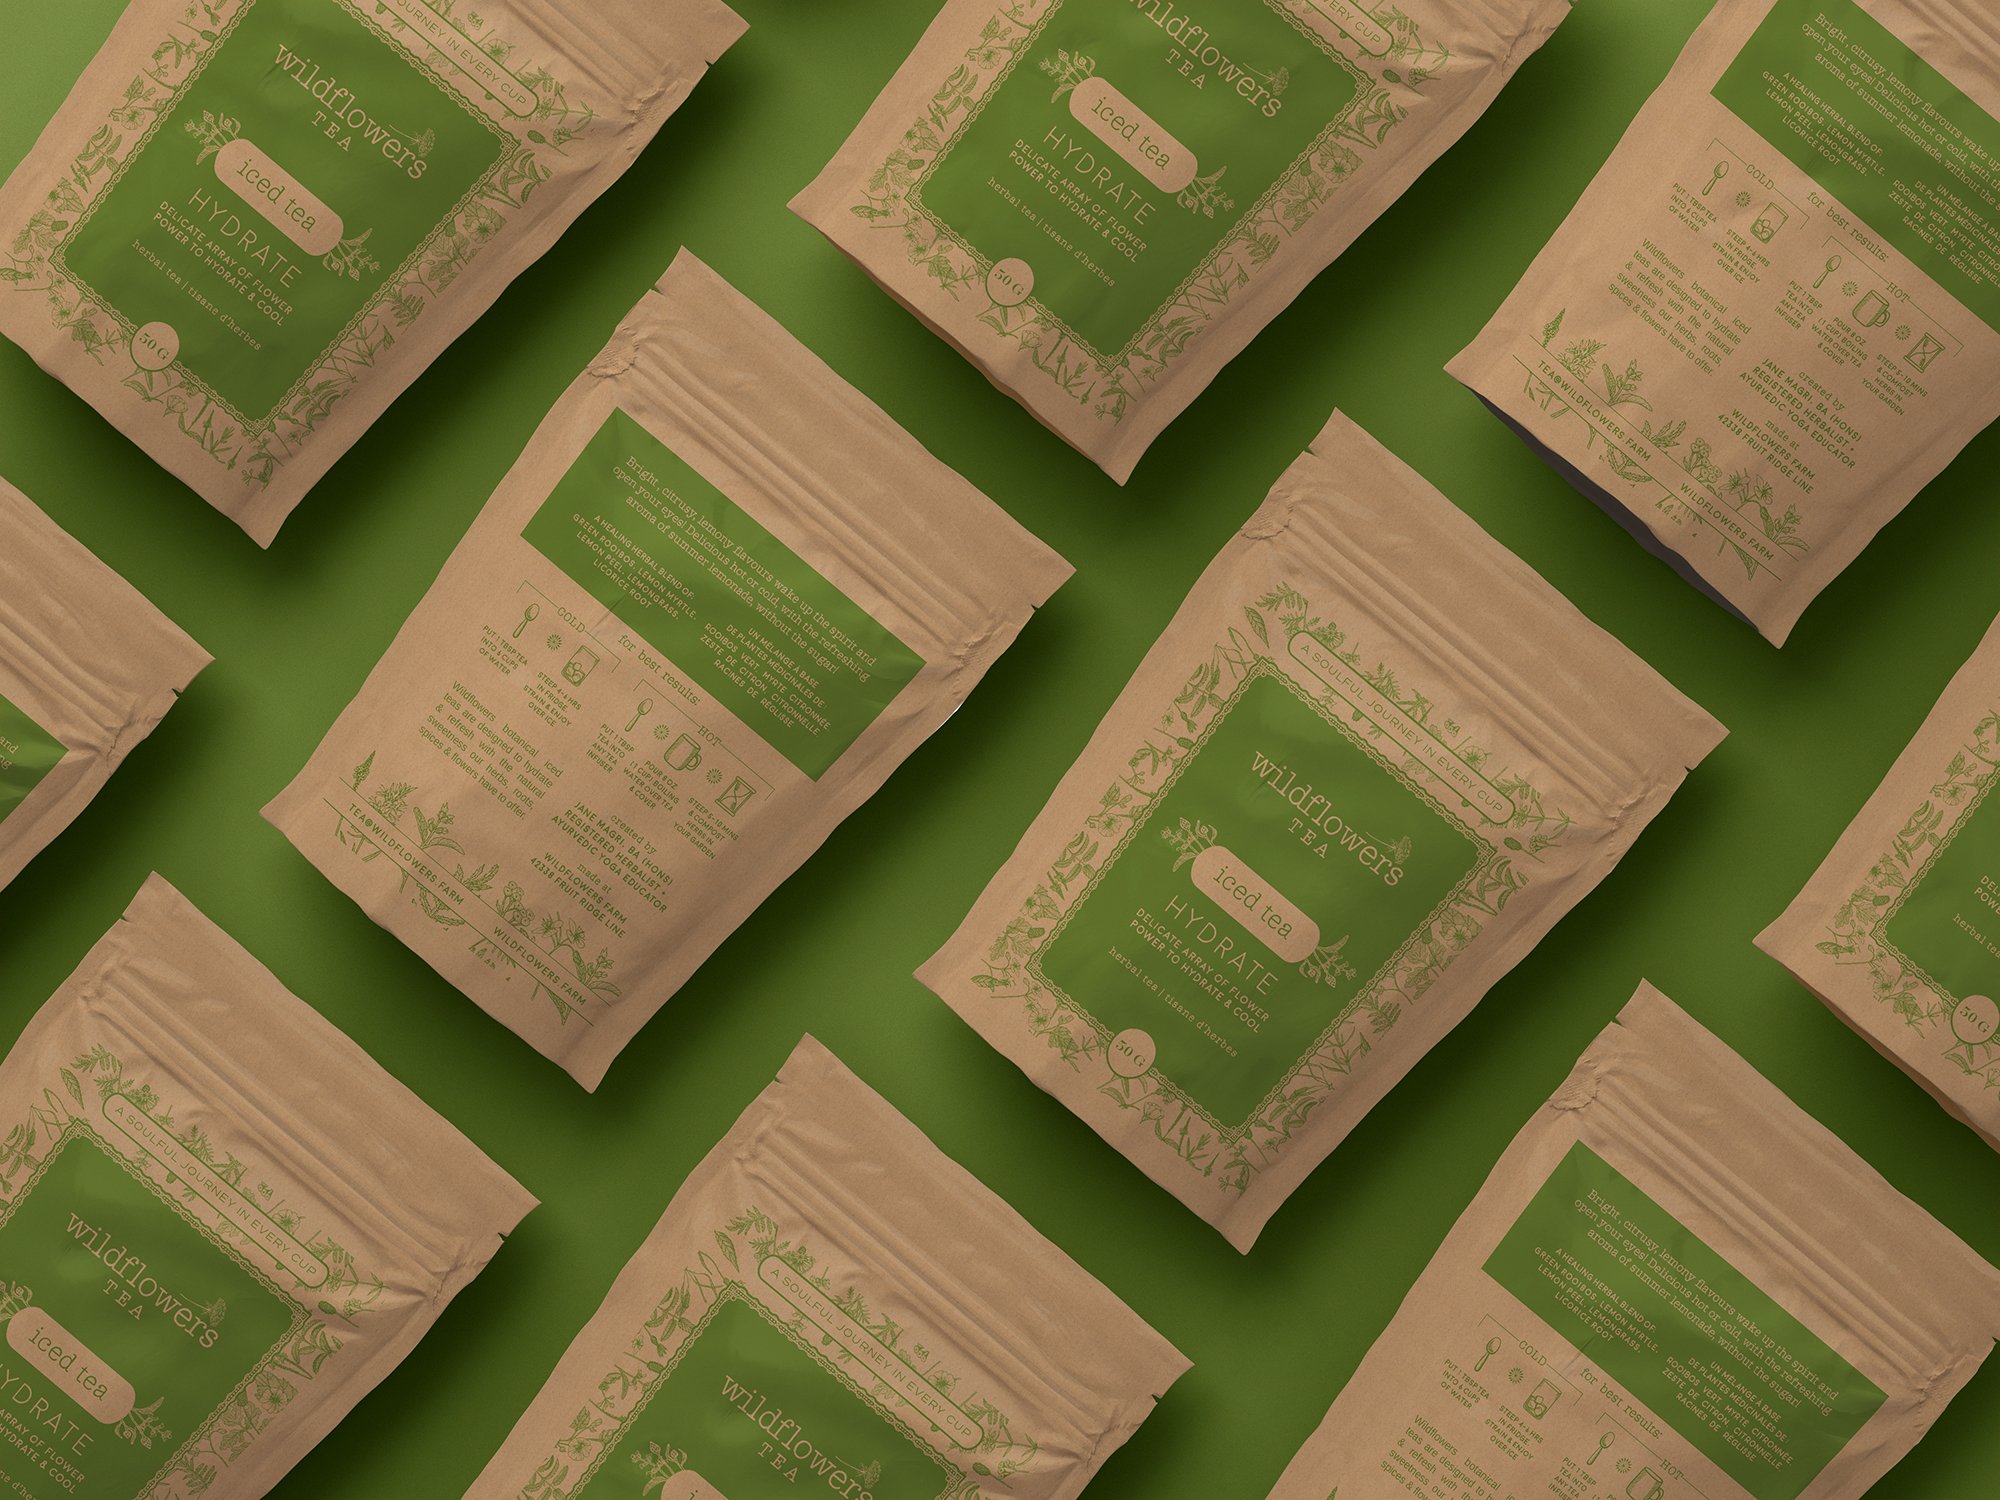 Herbal Tea Packaging Design - Iced Tea Series